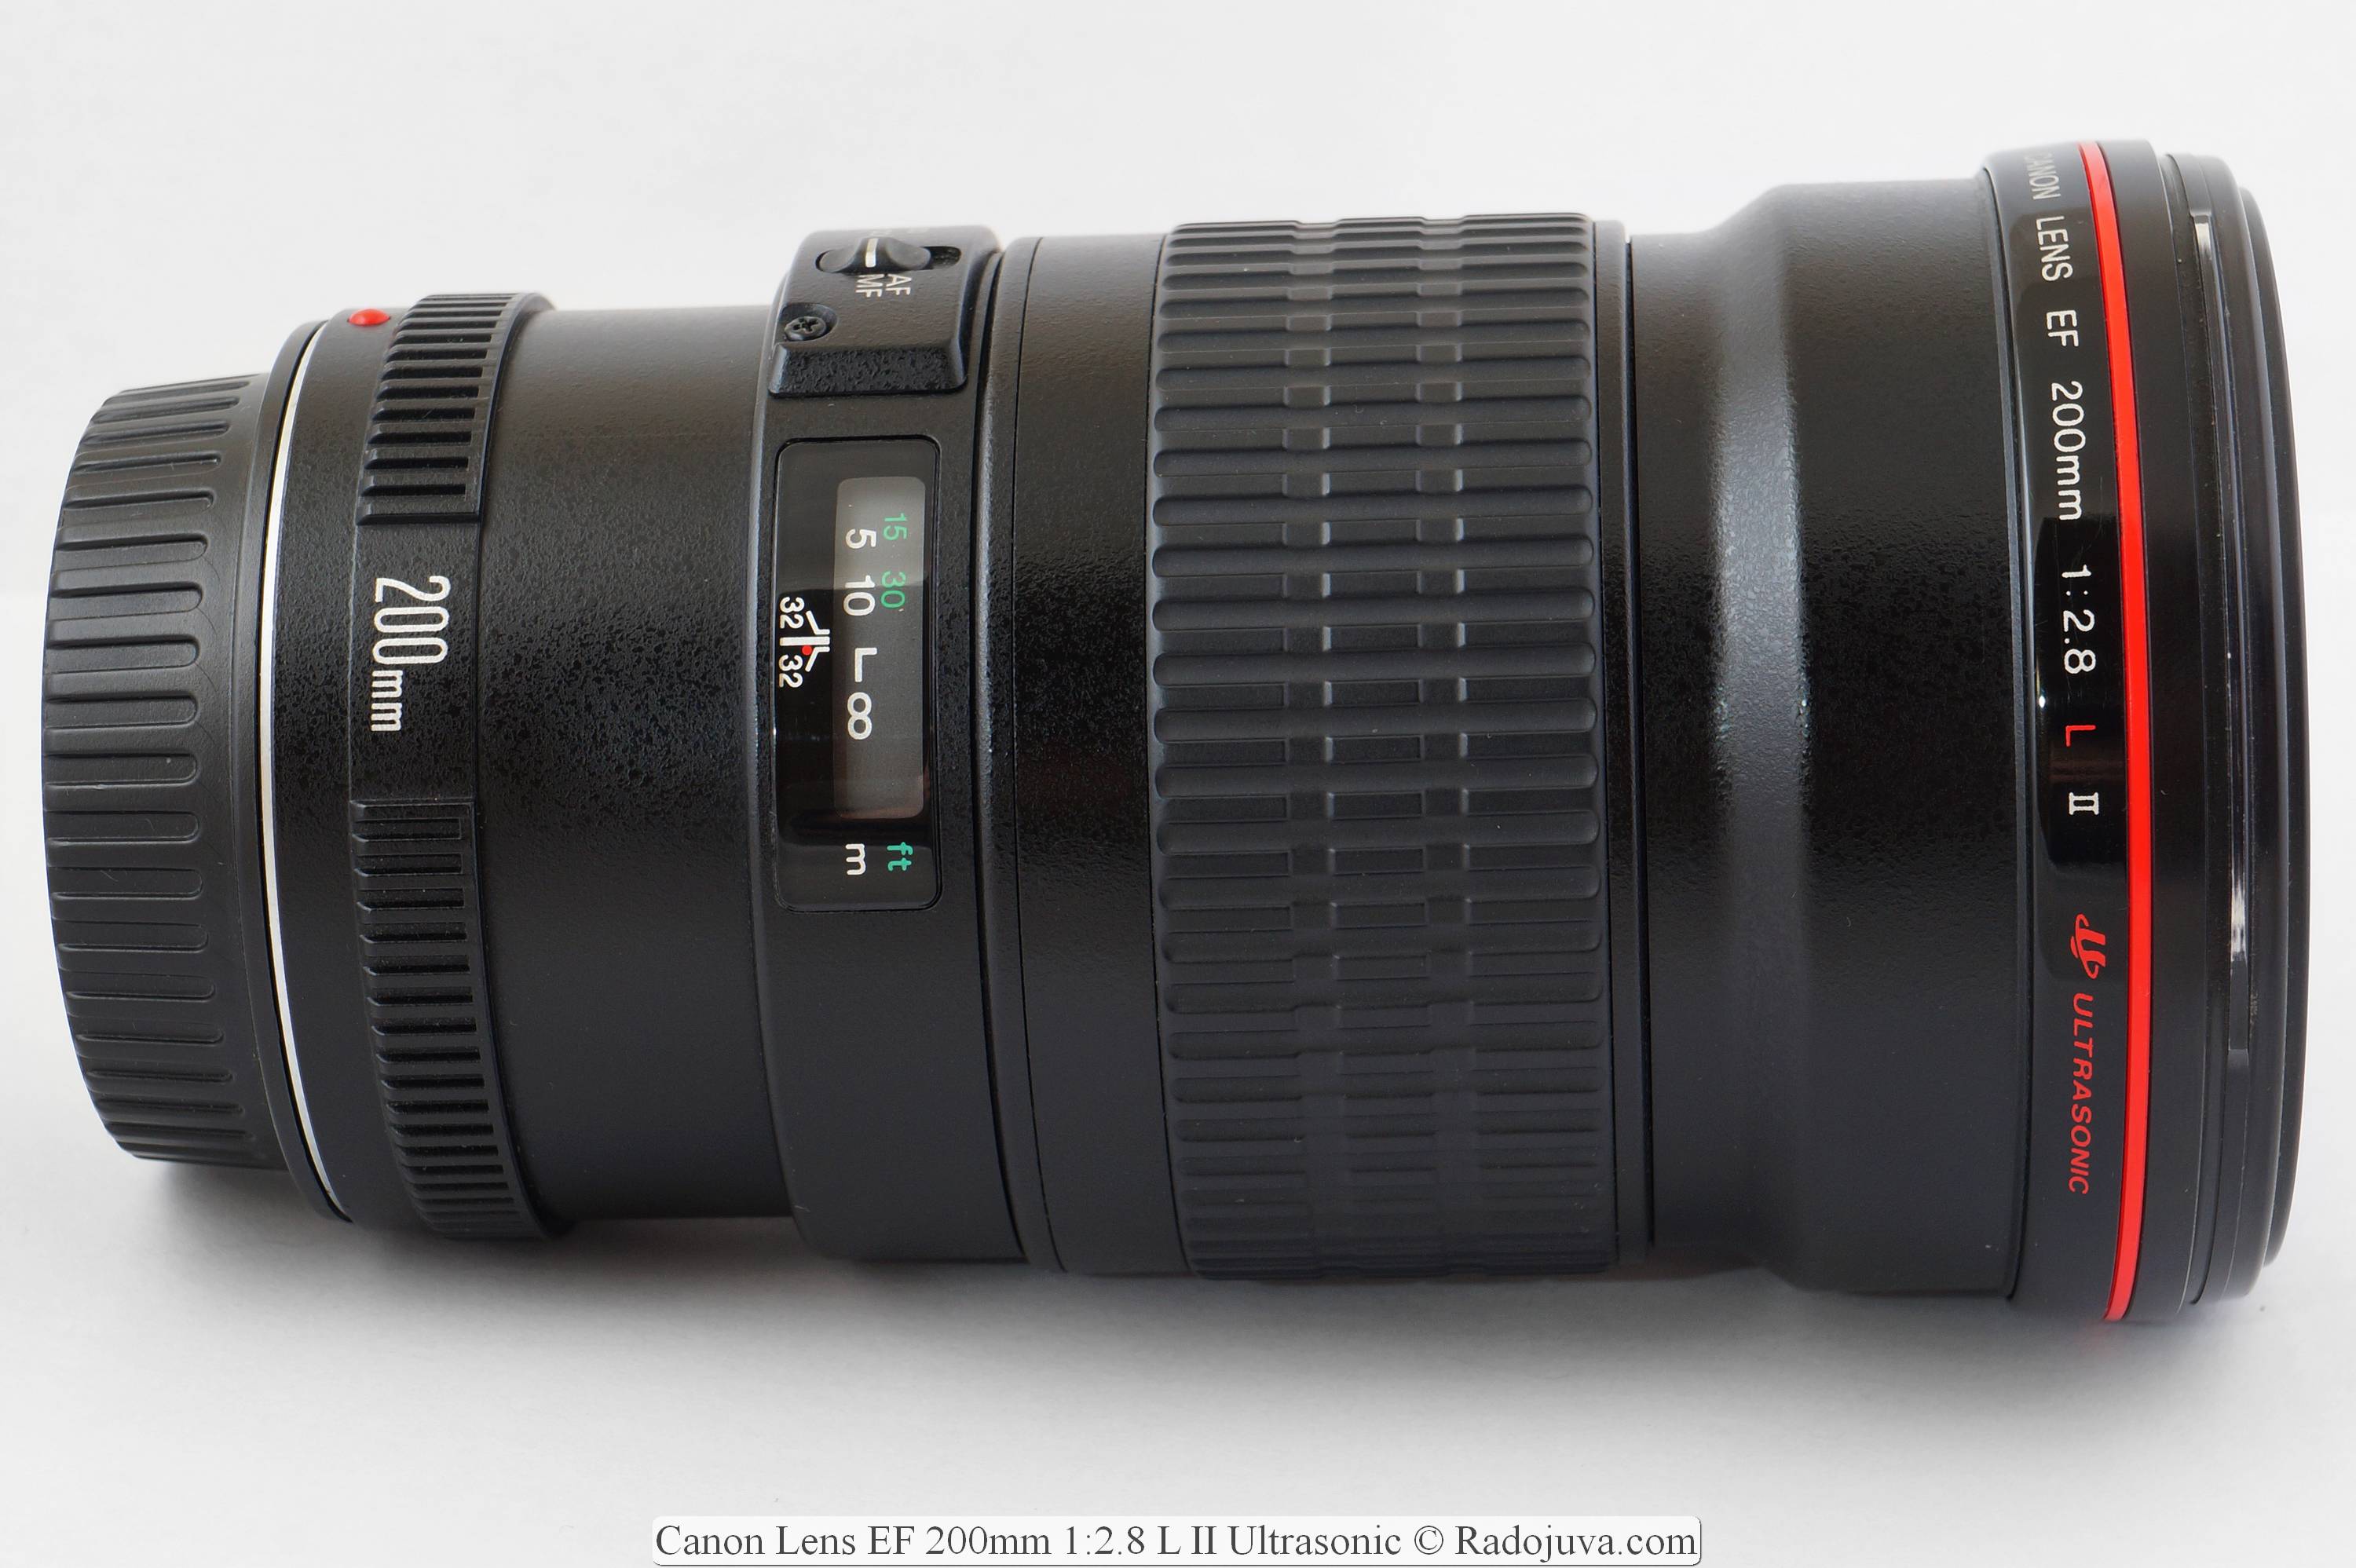 Canon Lens EF 200mm 1:2.8 L II Ultrasonic